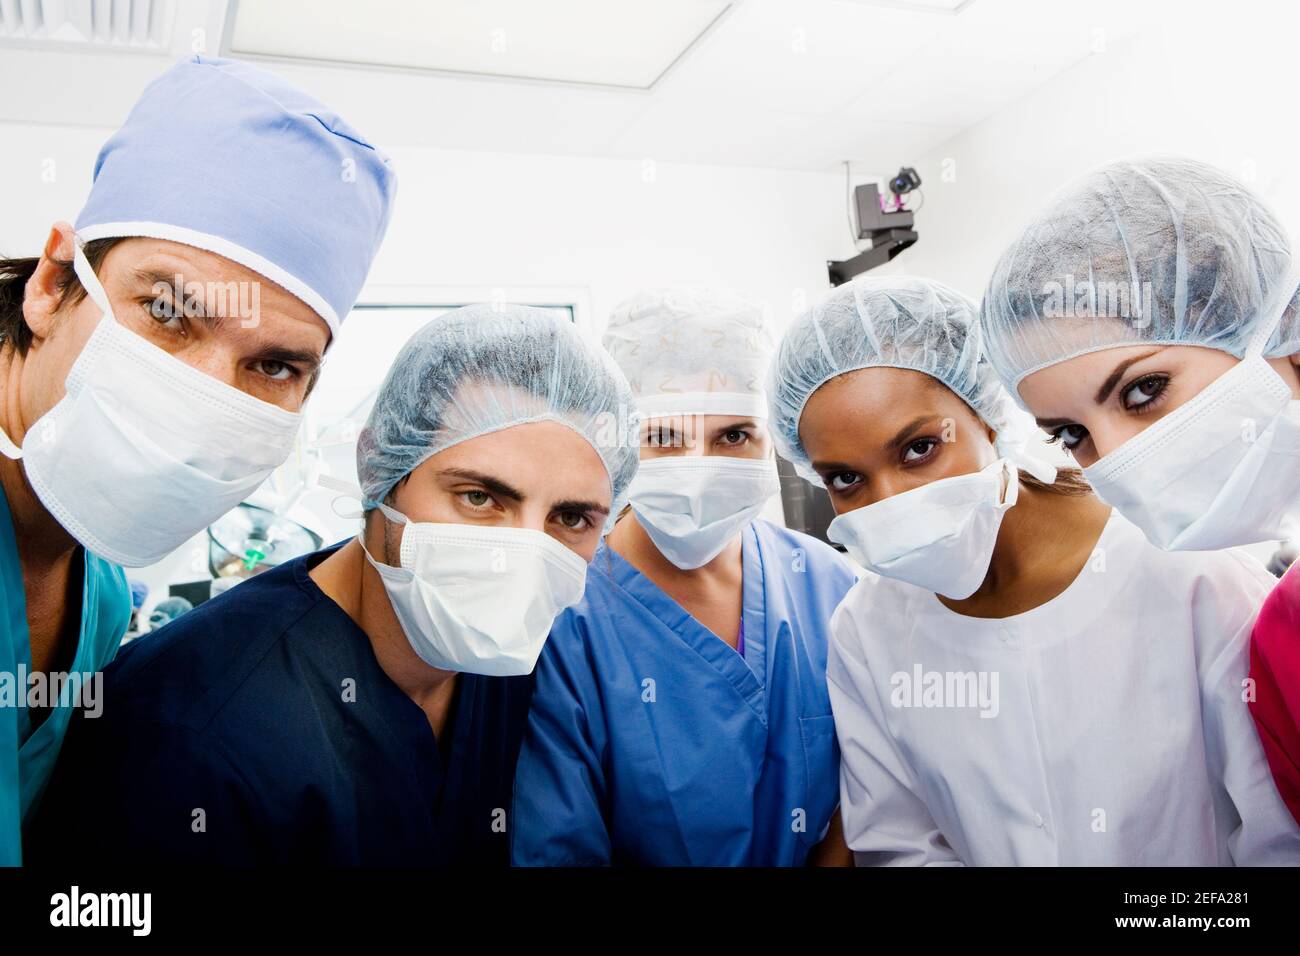 Portrait des chirurgiens debout dans une salle d'opération Banque D'Images